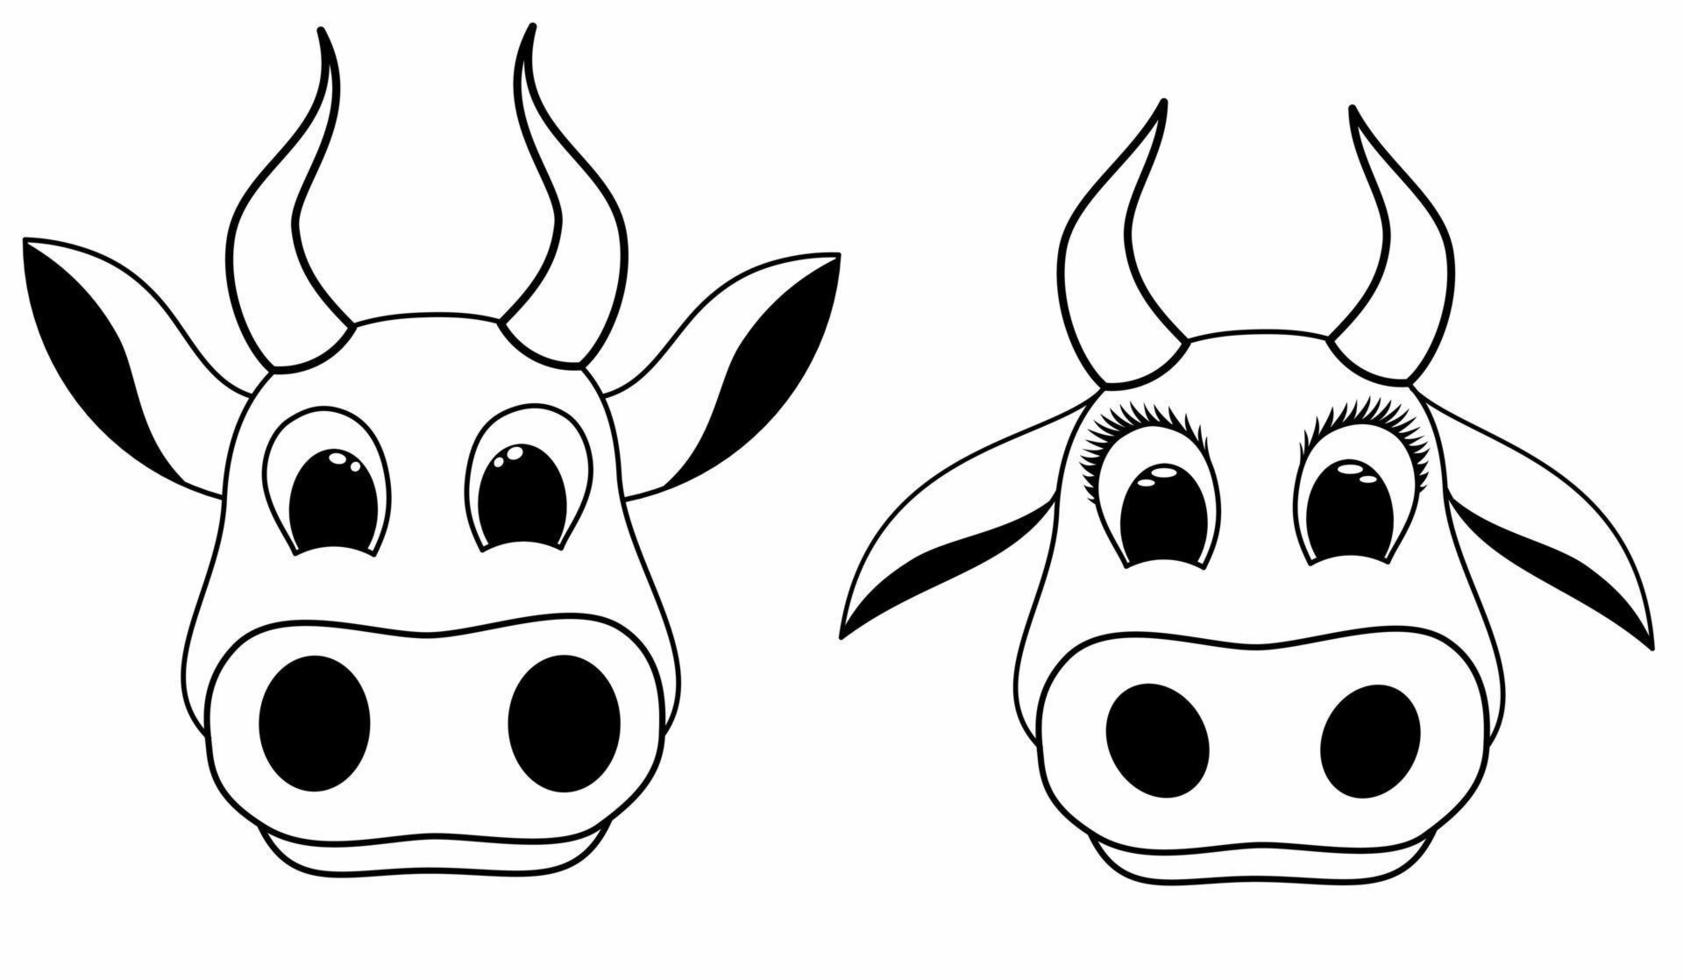 definir o ícone de rosto de vaca bonito dos desenhos animados. ilustração do logotipo do estilo doodle. vetor